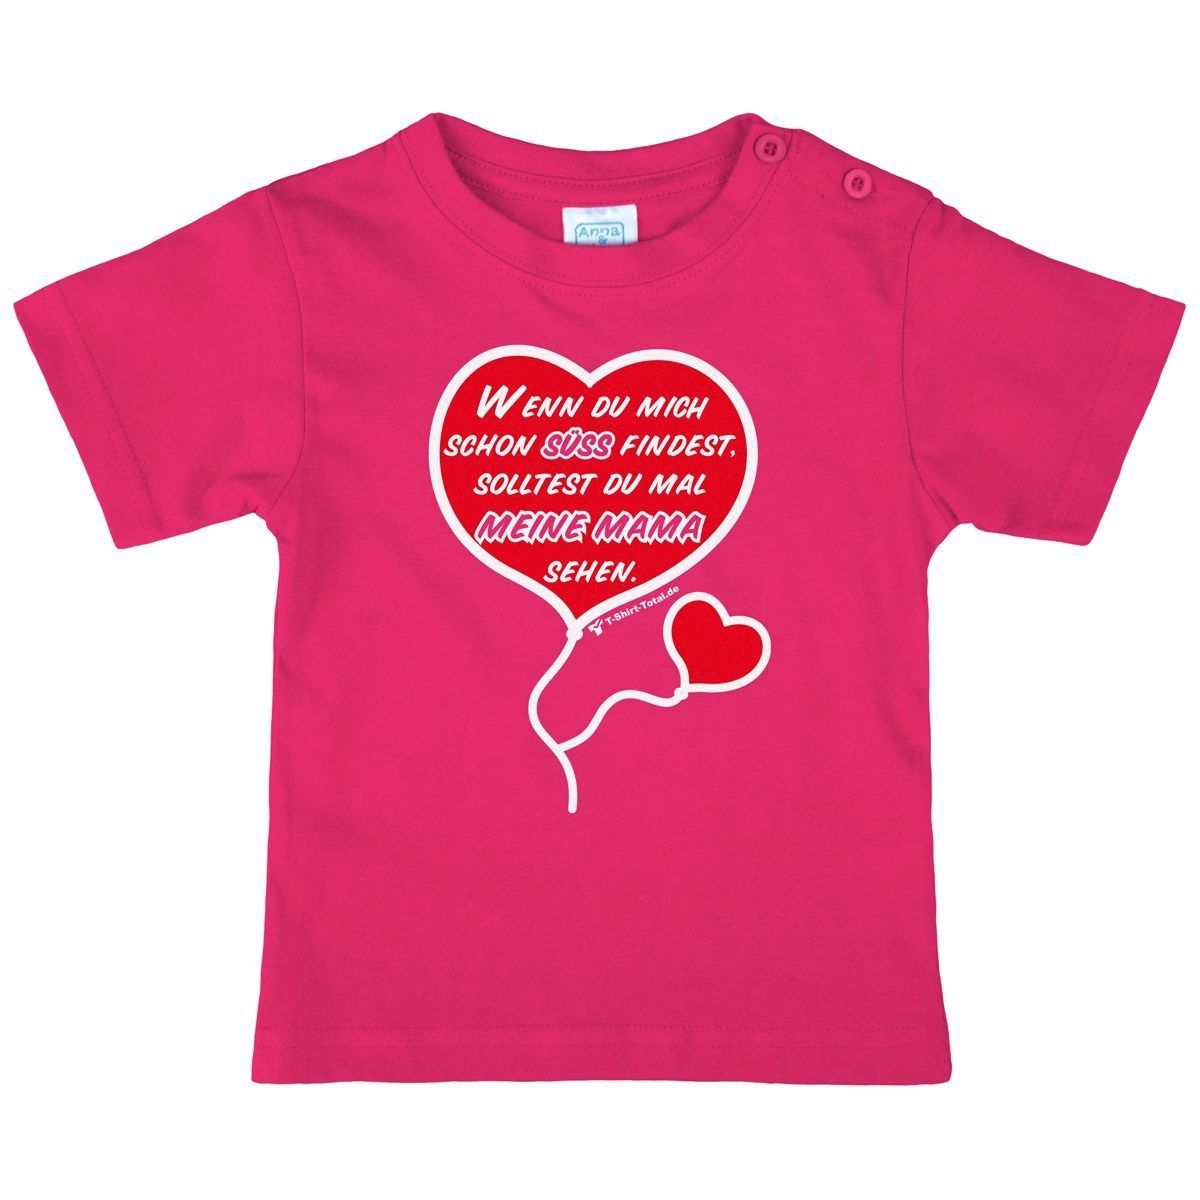 Süß finden Kinder T-Shirt pink 98